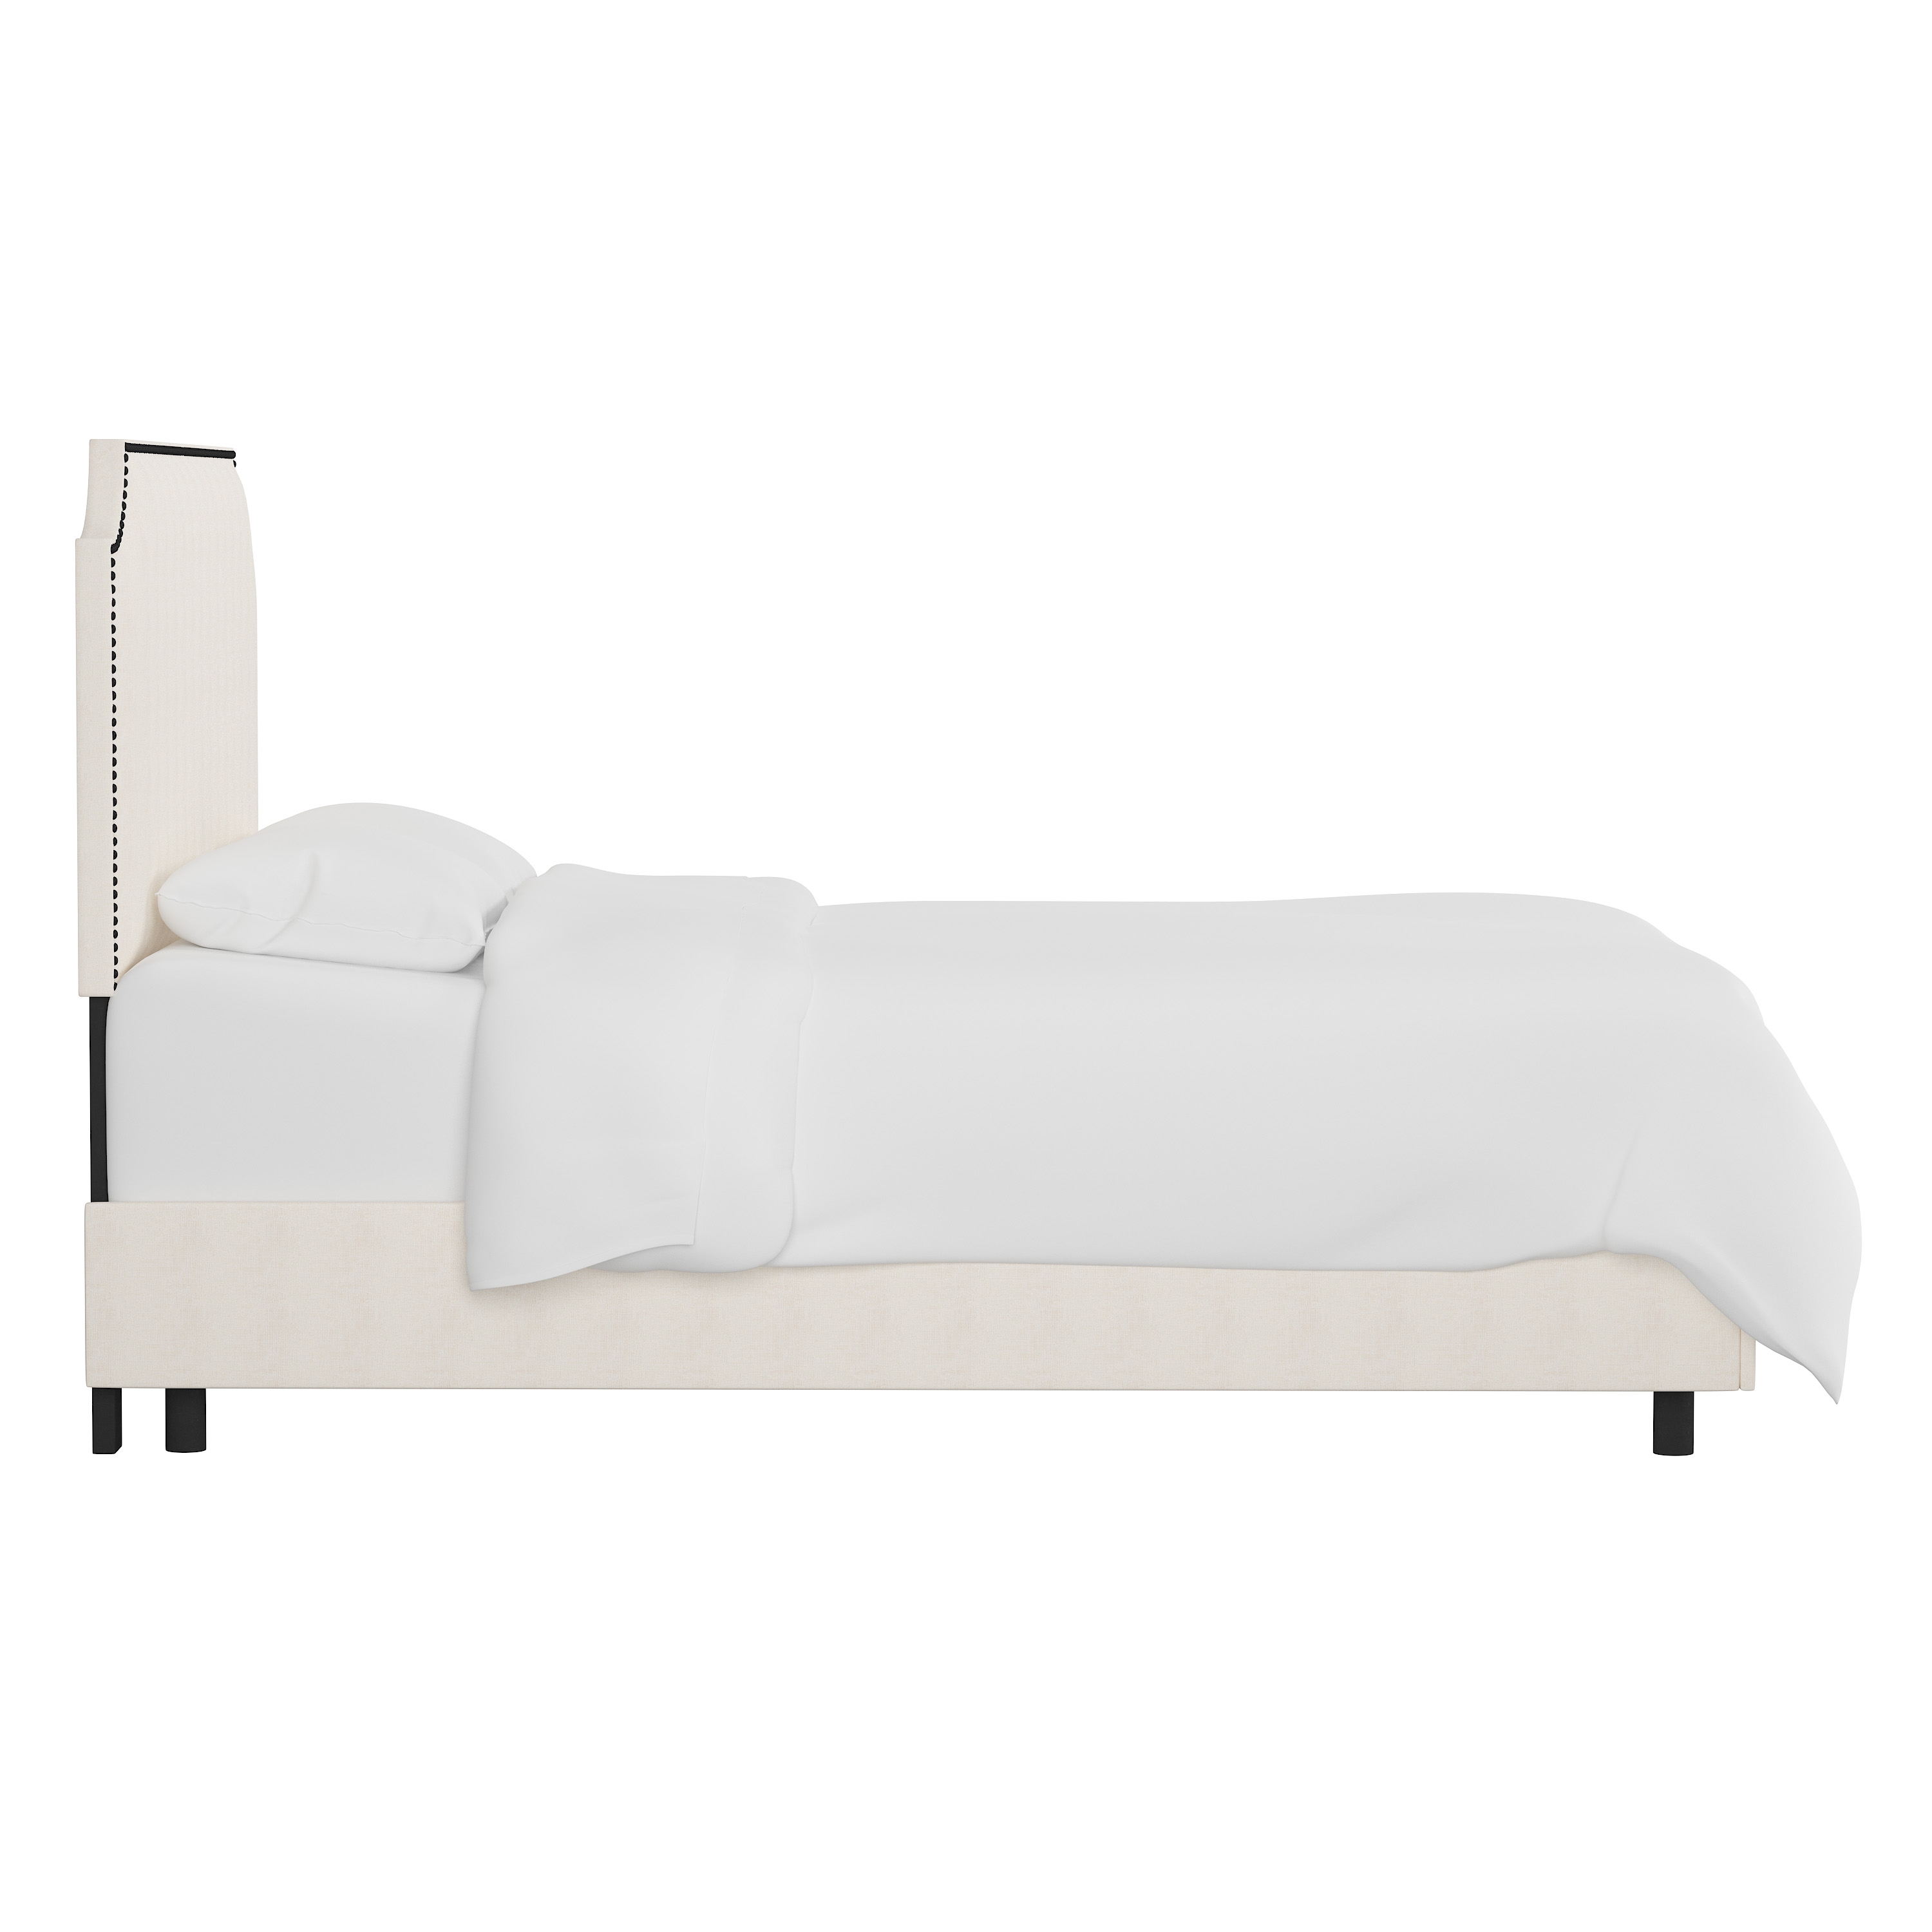 Hudson Bed, Full, White, Black Nailheads - Image 2